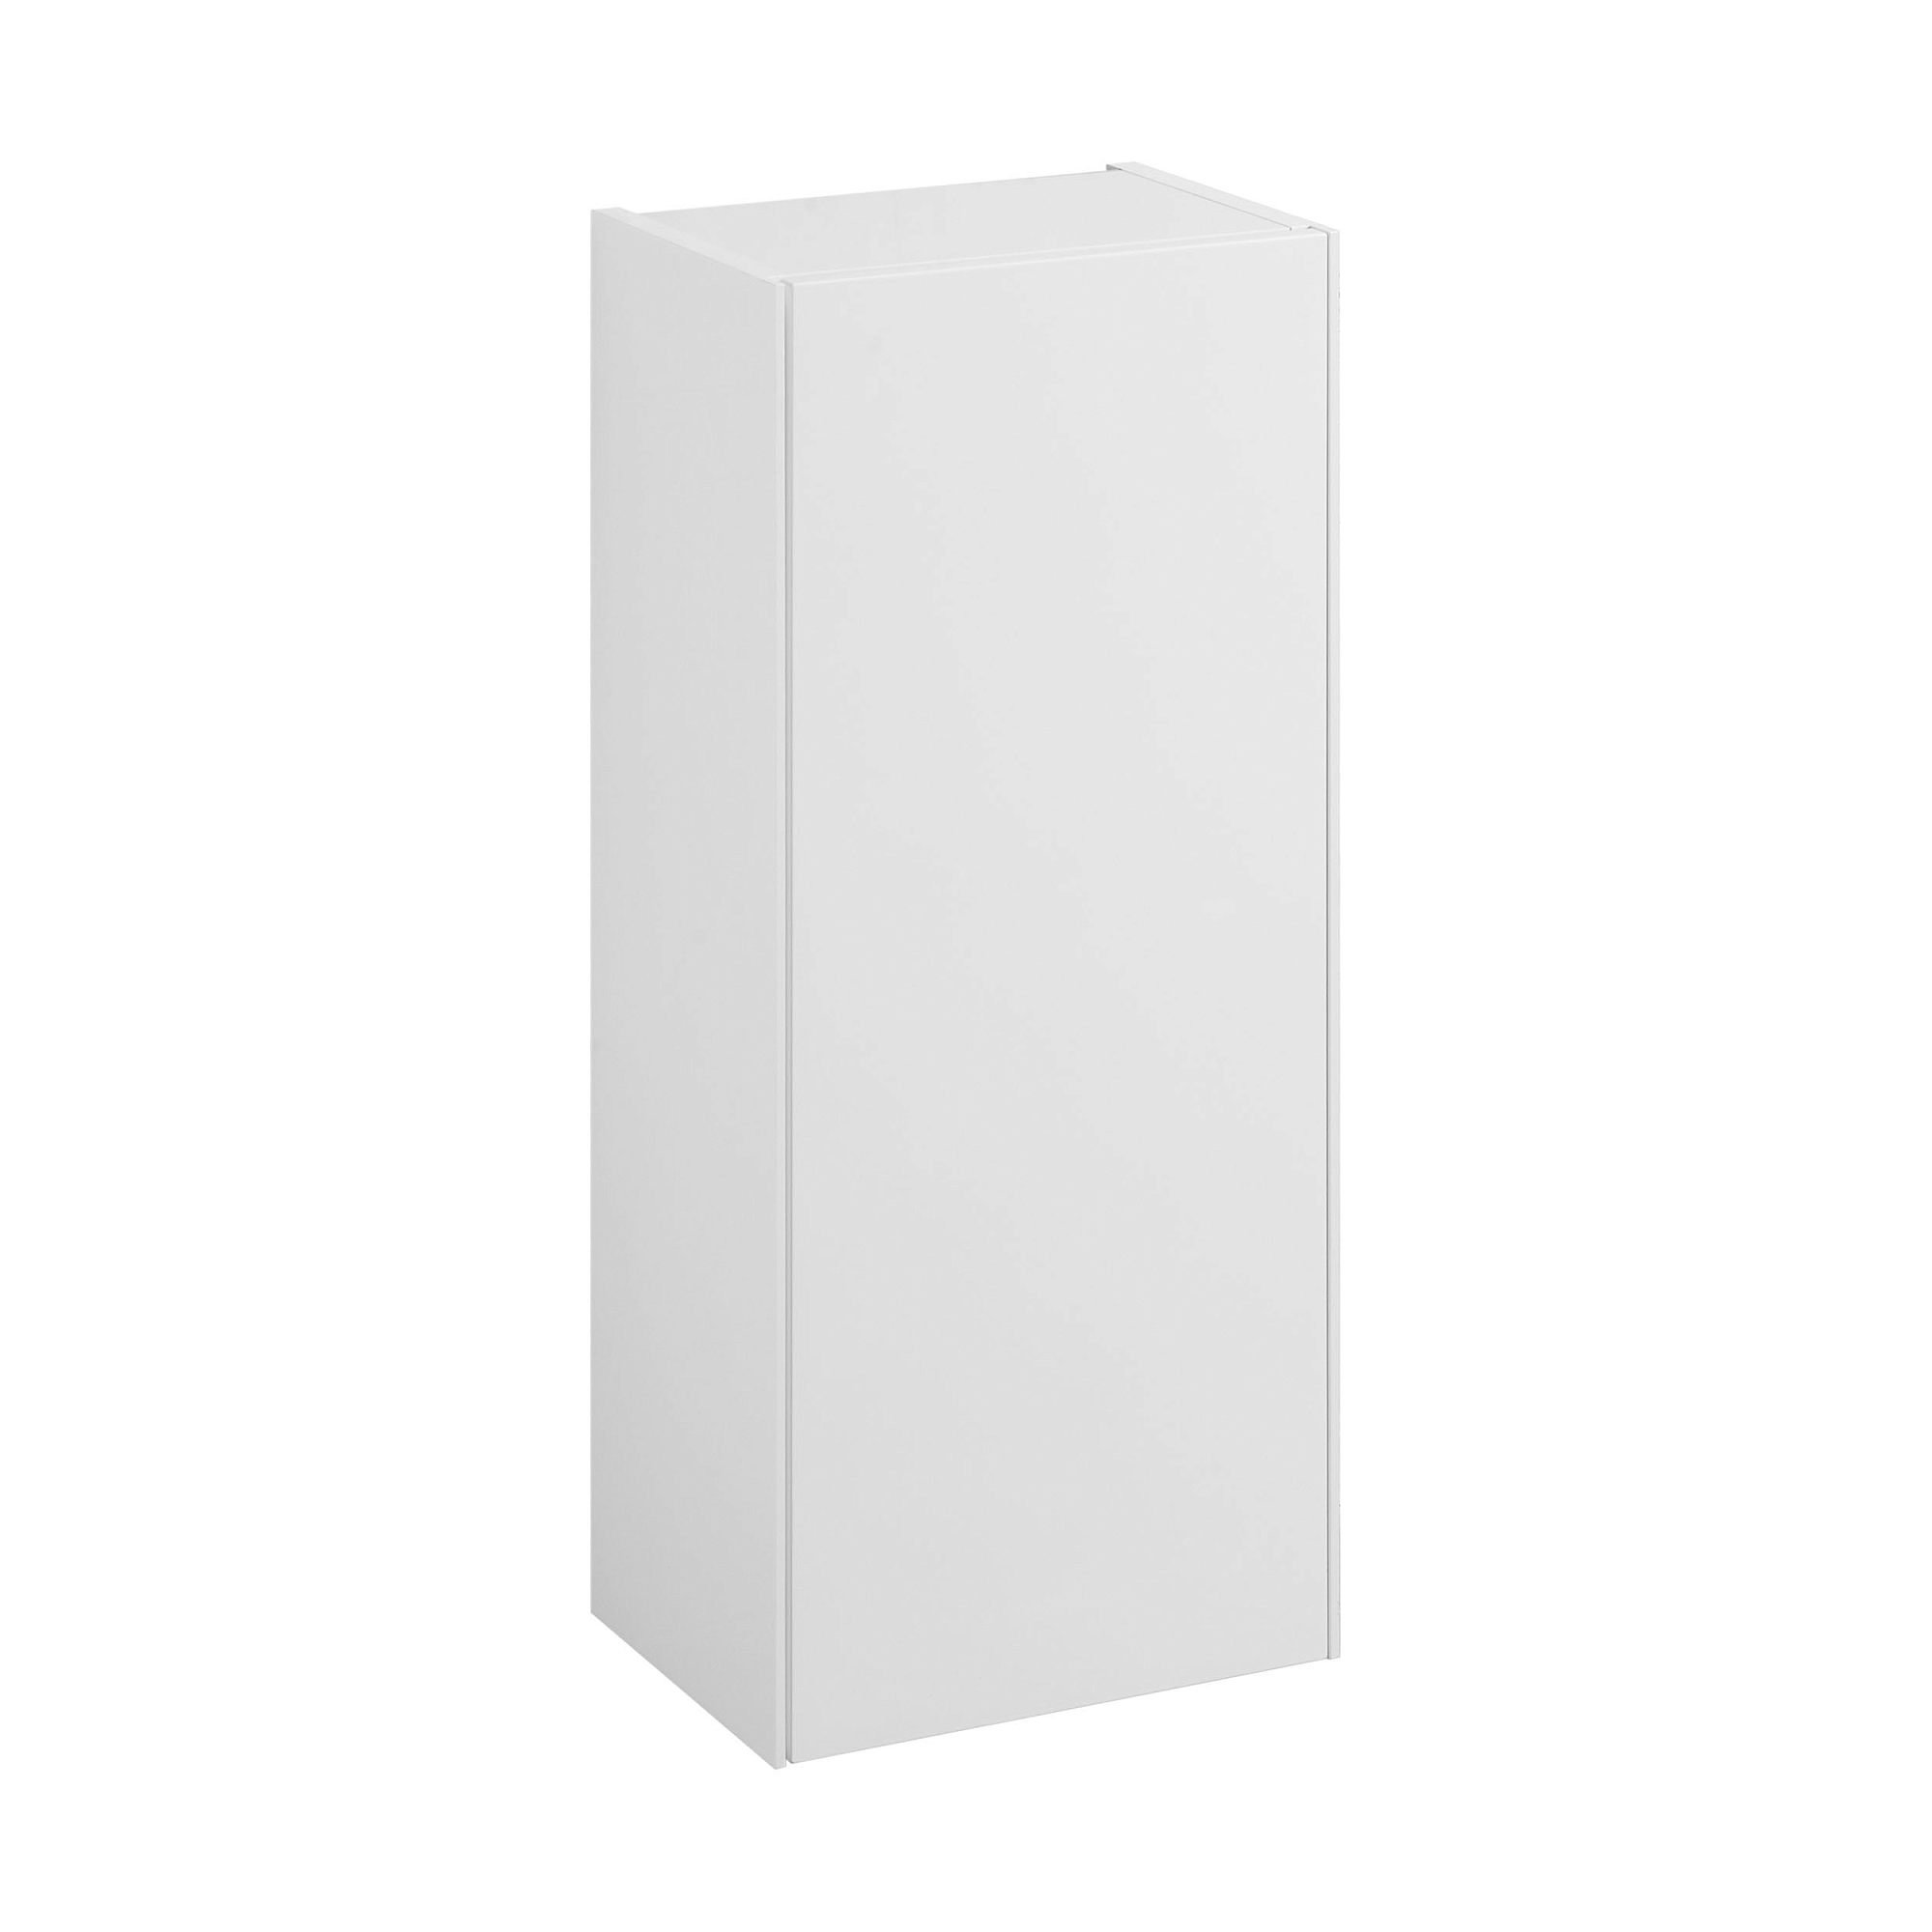 Шкаф навесной Aquaton Асти белый матовый, белый глянец 1A262903AX2B0 